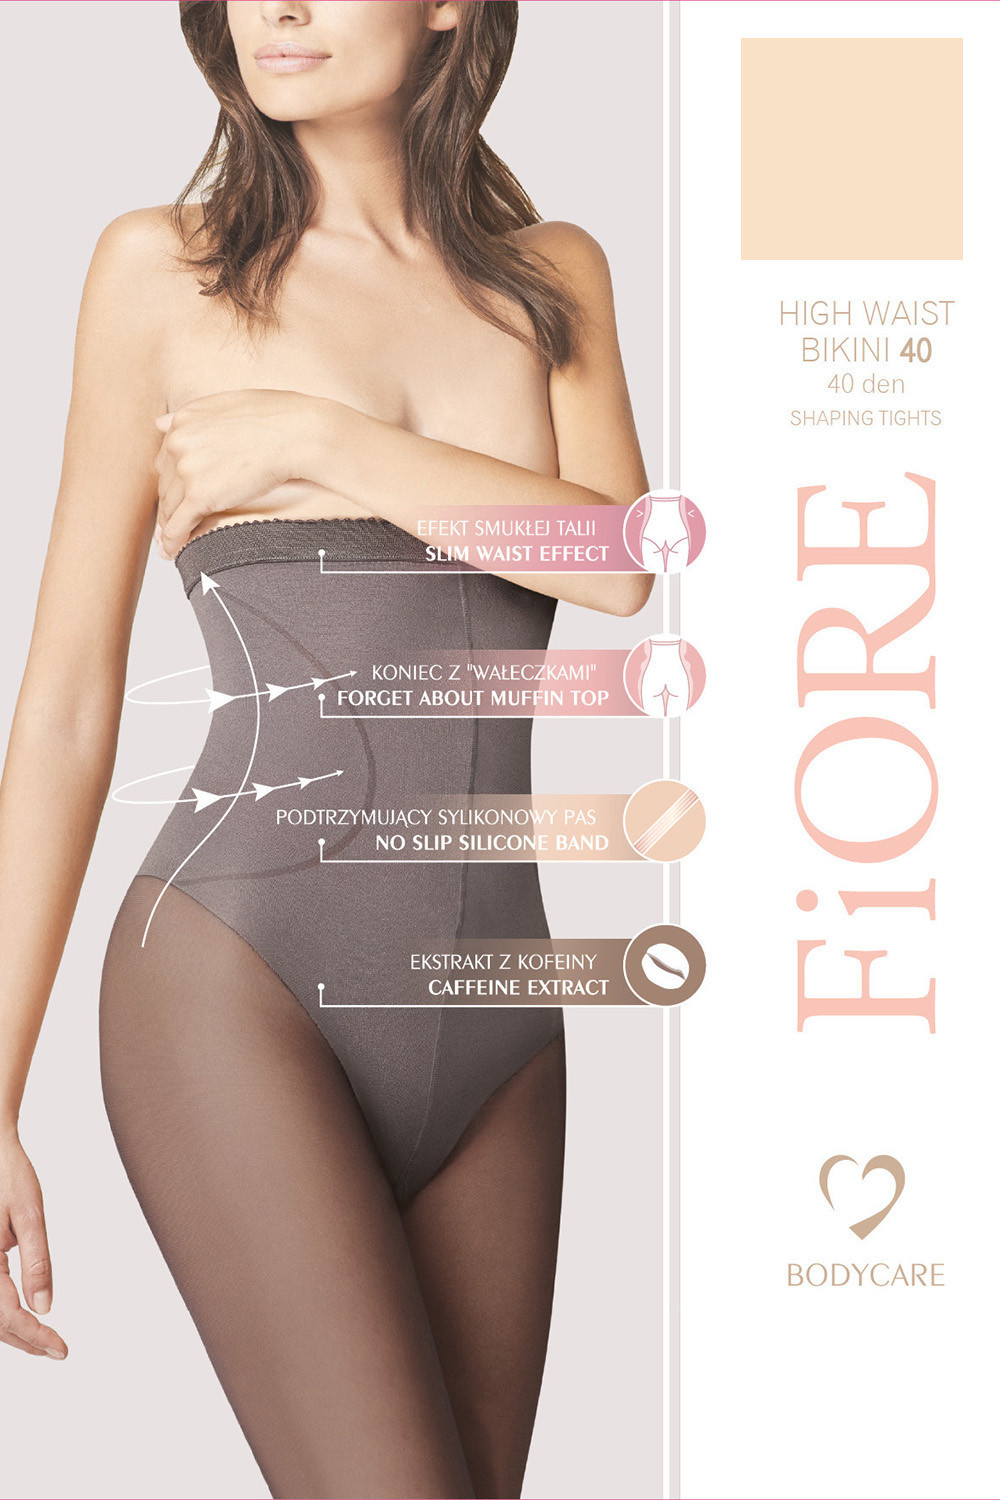 Fiore High Waist Bikini 40 den M5219 kolor:light natural 2-S